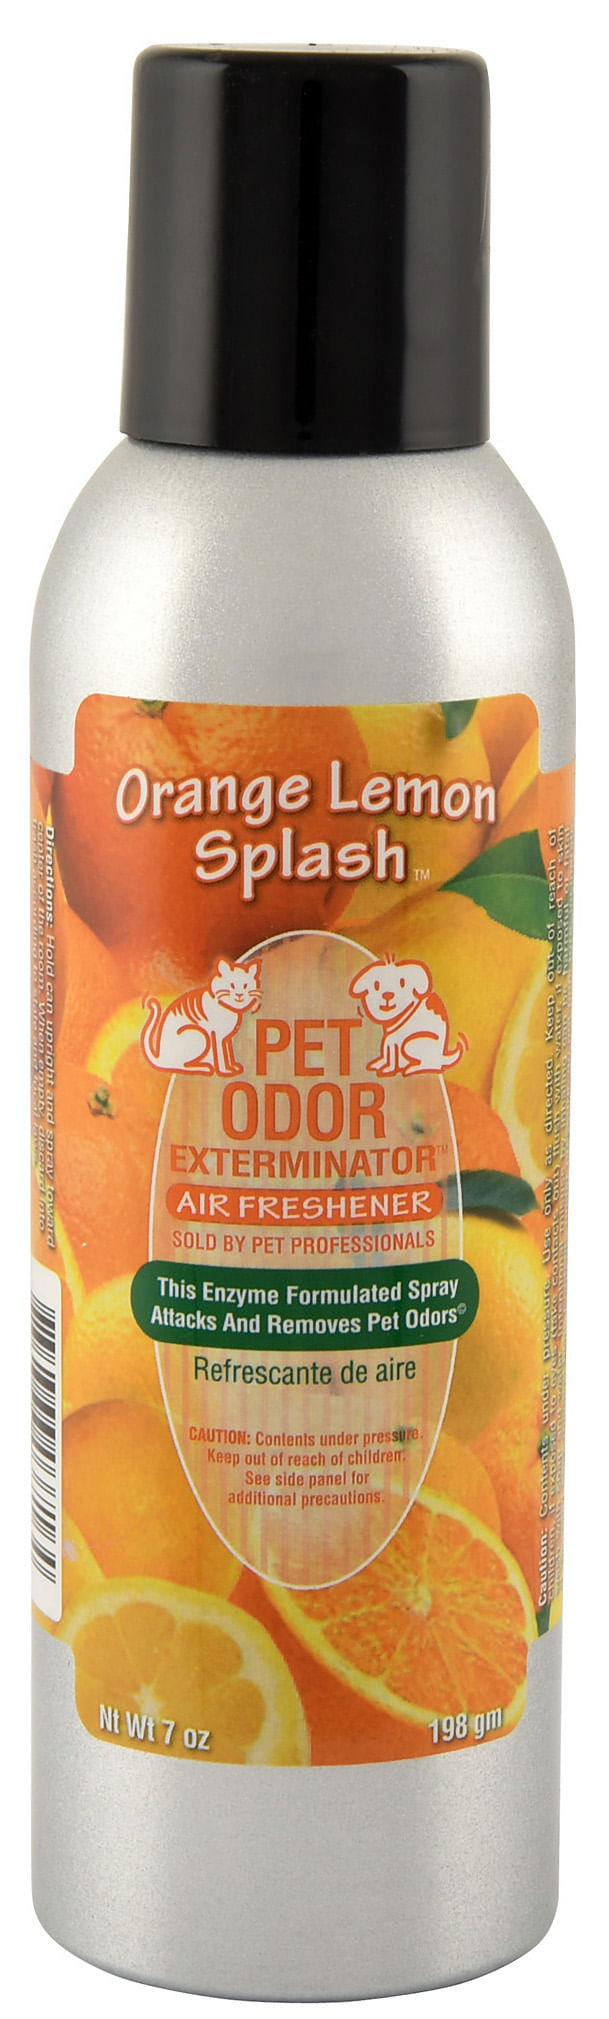 Pet-Odor-Exterminator-Spray-Orange-Lemon-Splash-7oz